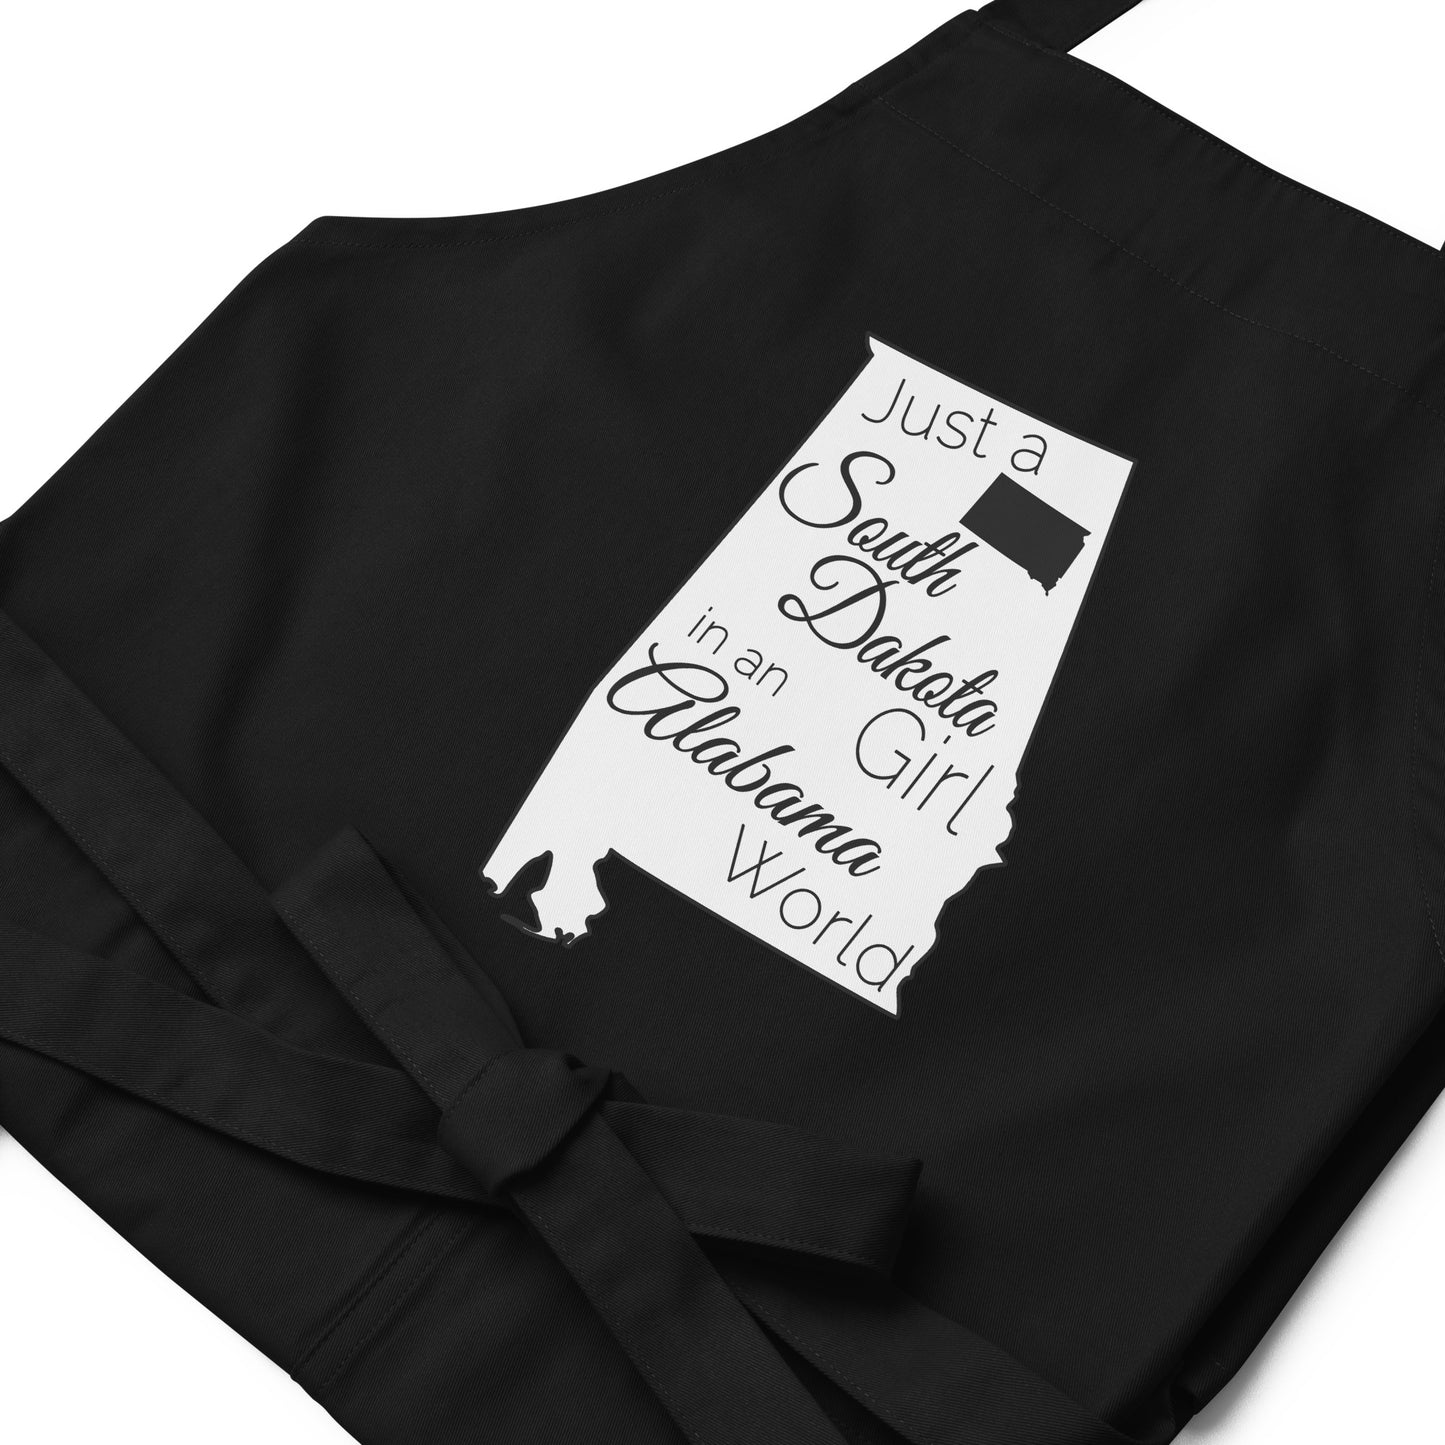 Just a South Dakota Girl in an Alabama World Organic cotton apron